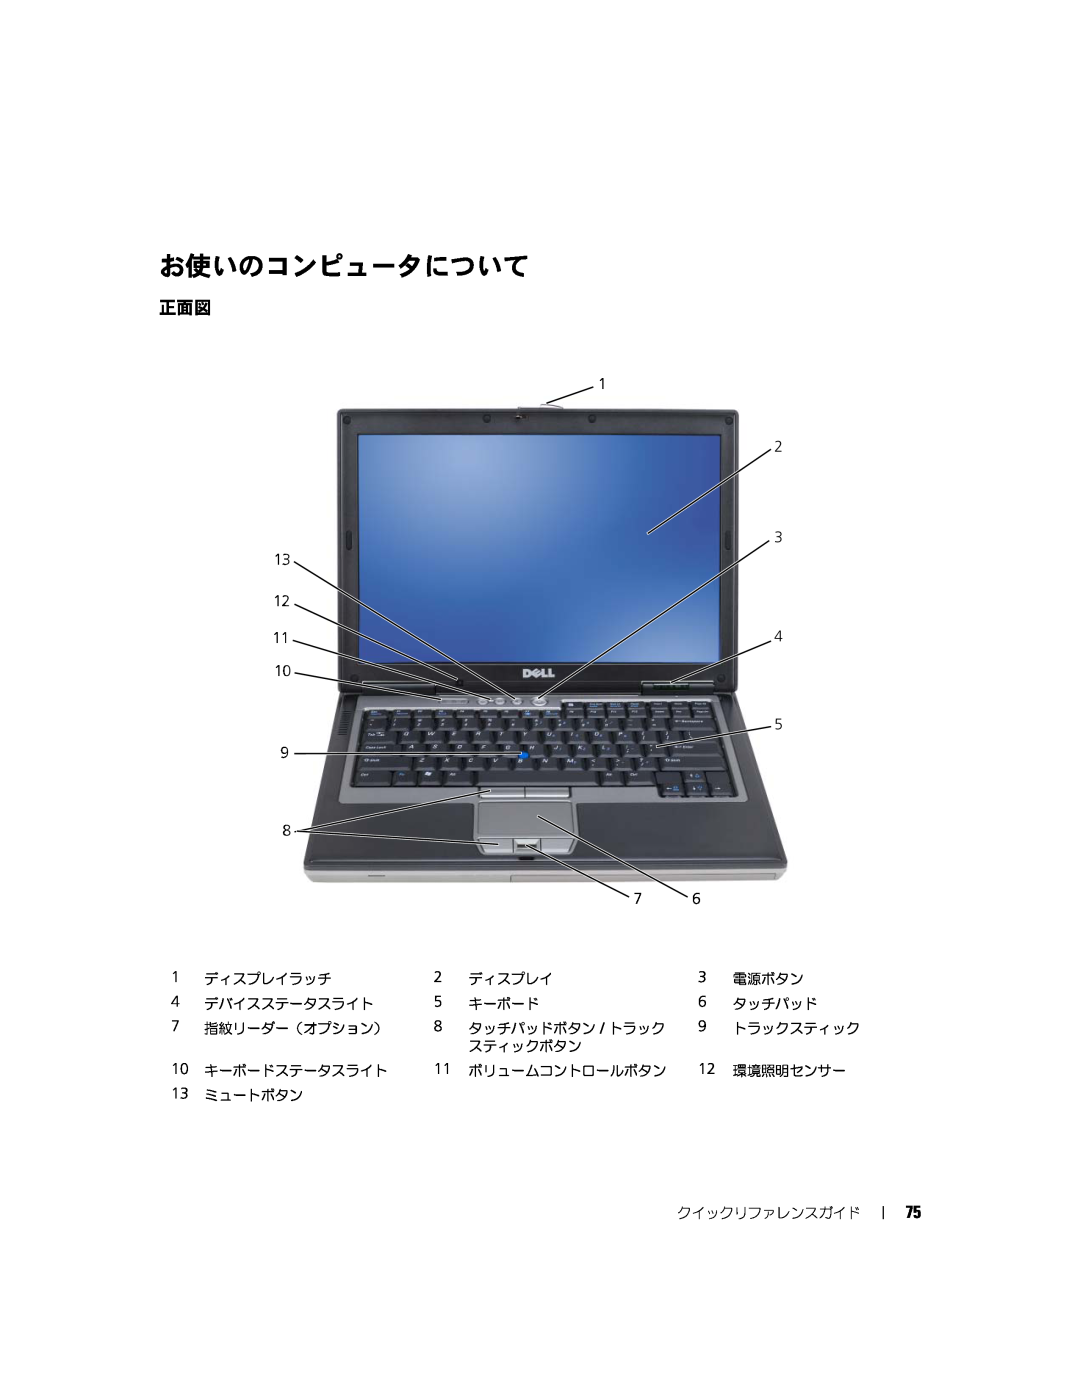 Dell D631, XP140 manual お使いのコンピュータについて 